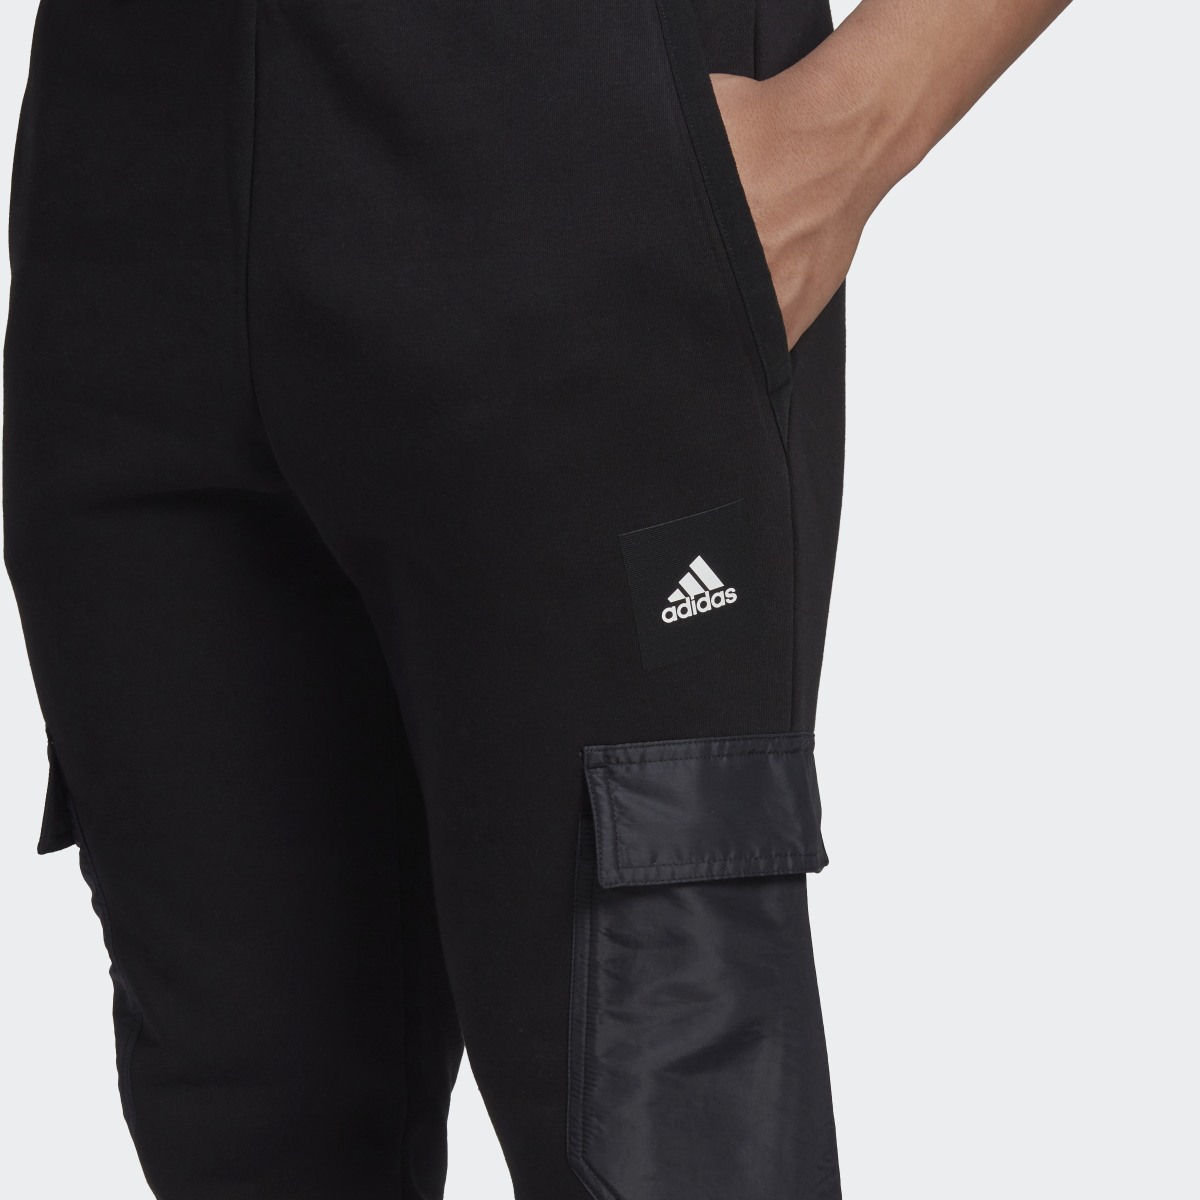 Adidas Fleece Woven Pants. 5